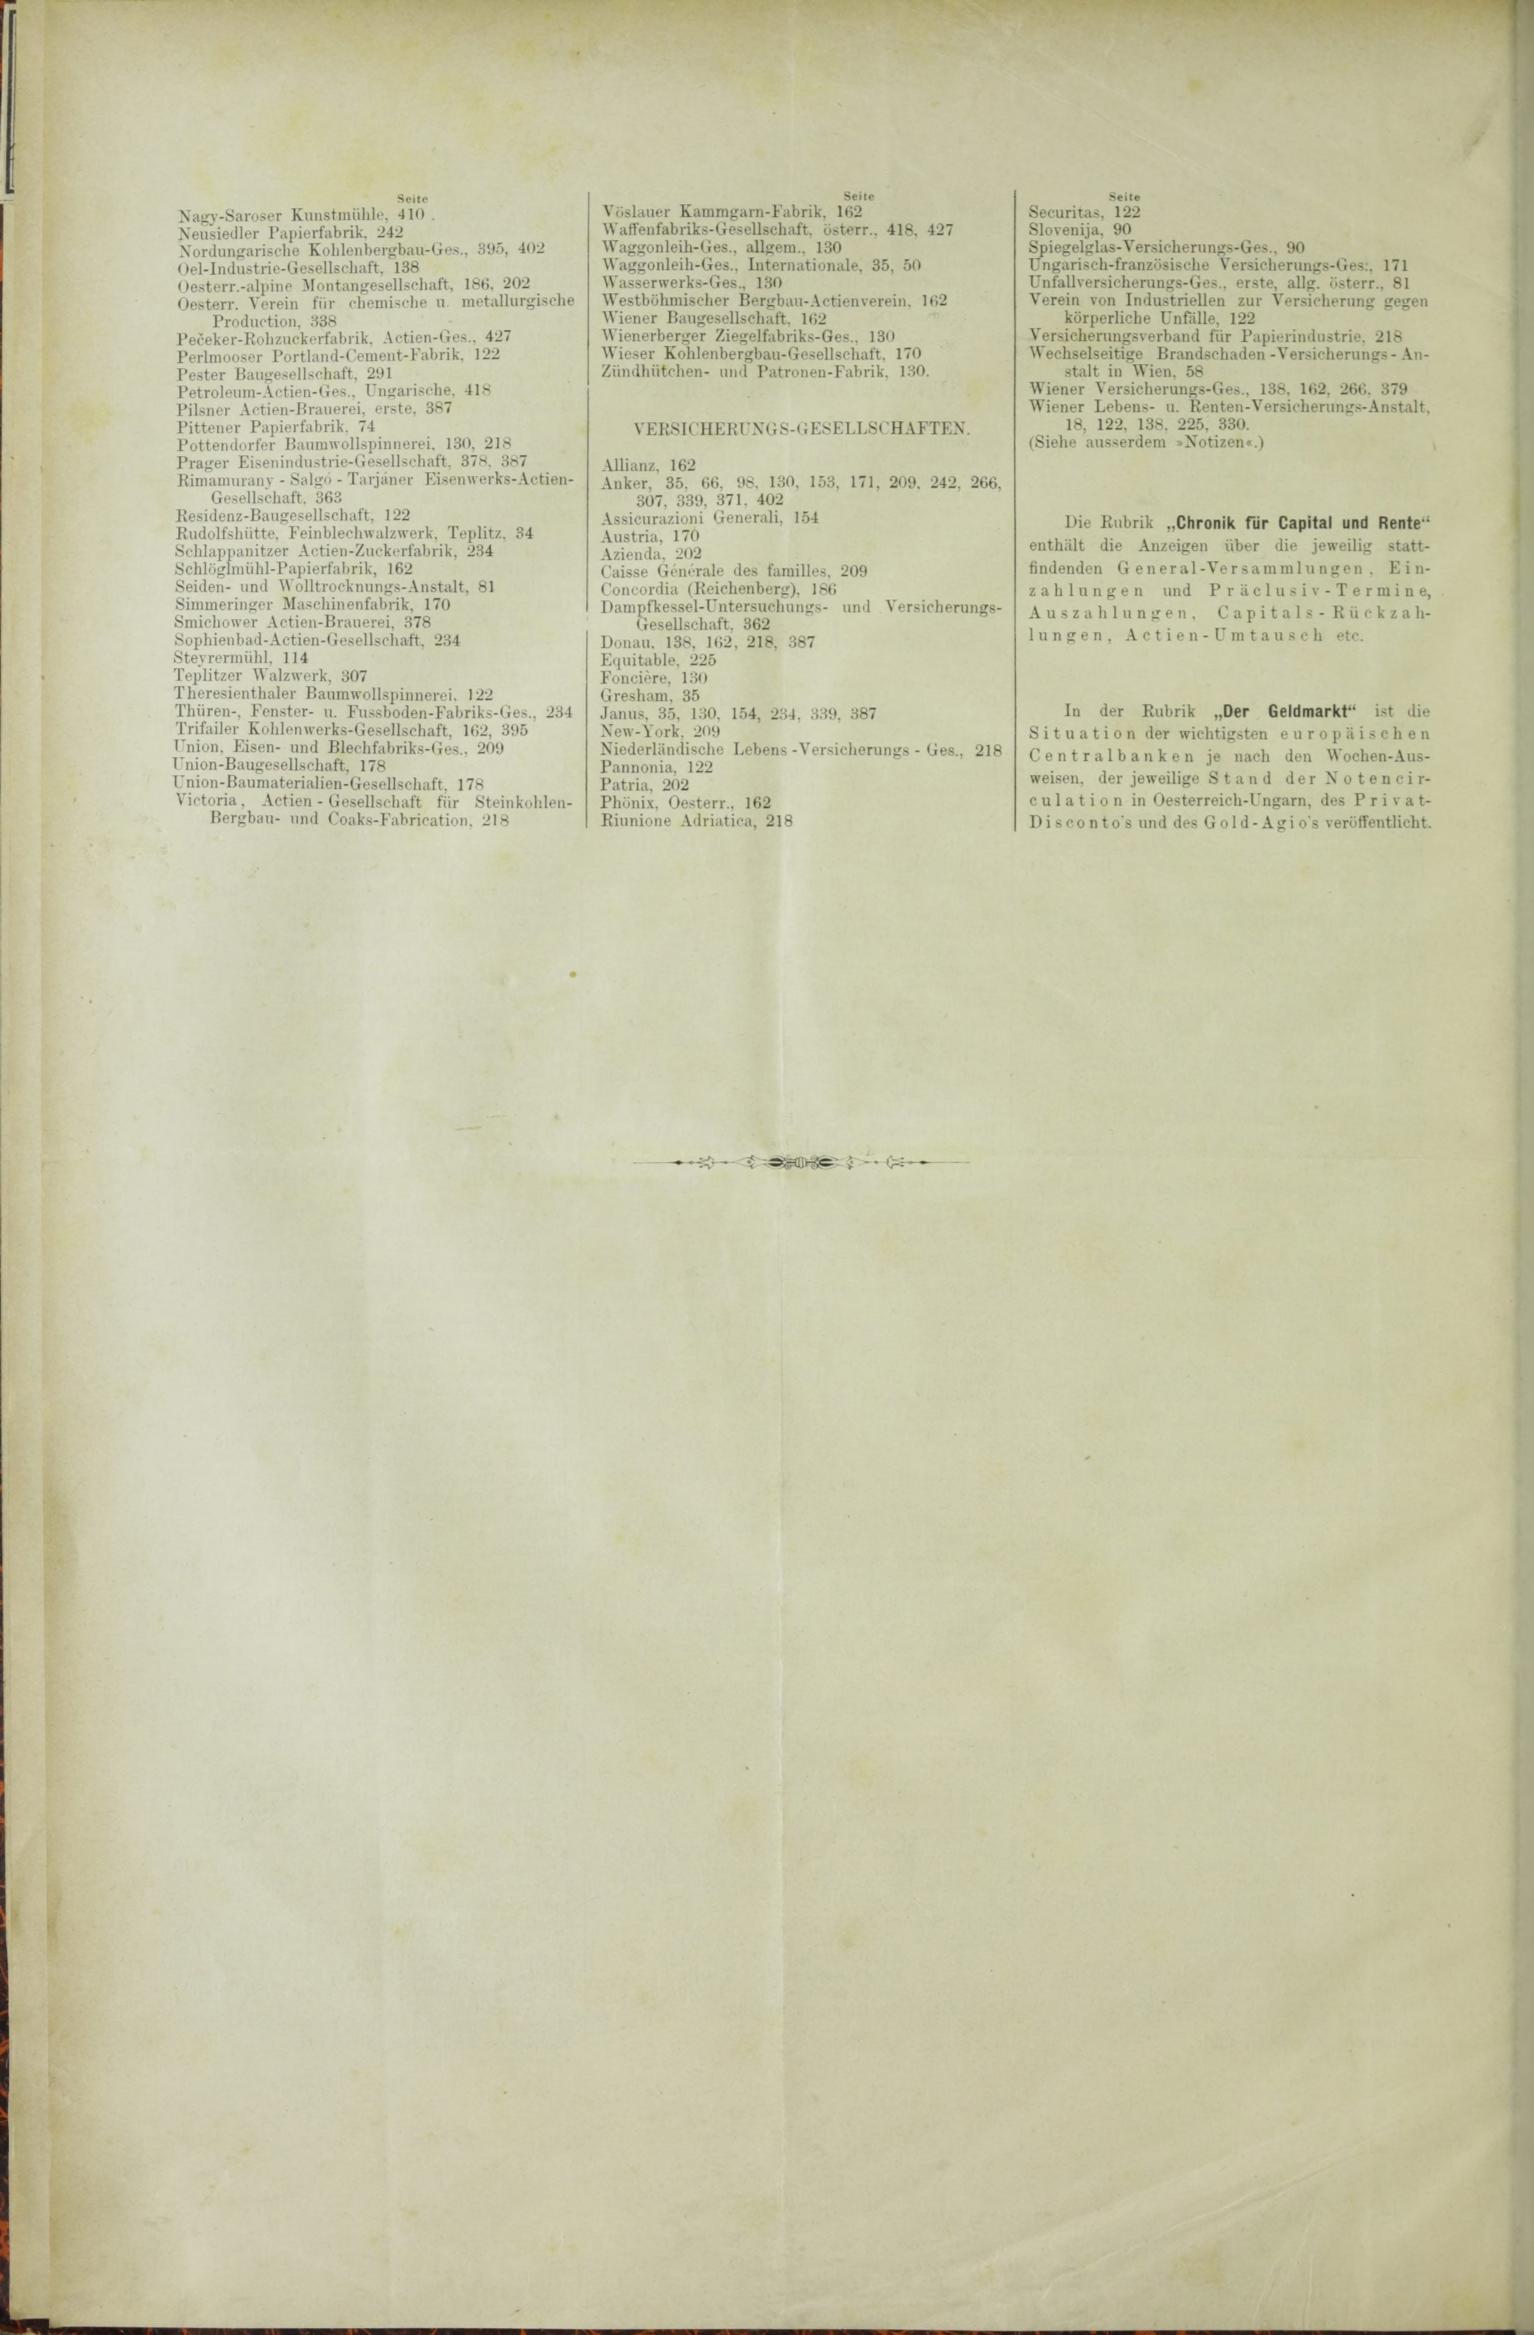 Der Tresor 08.01.1885 - Seite 16